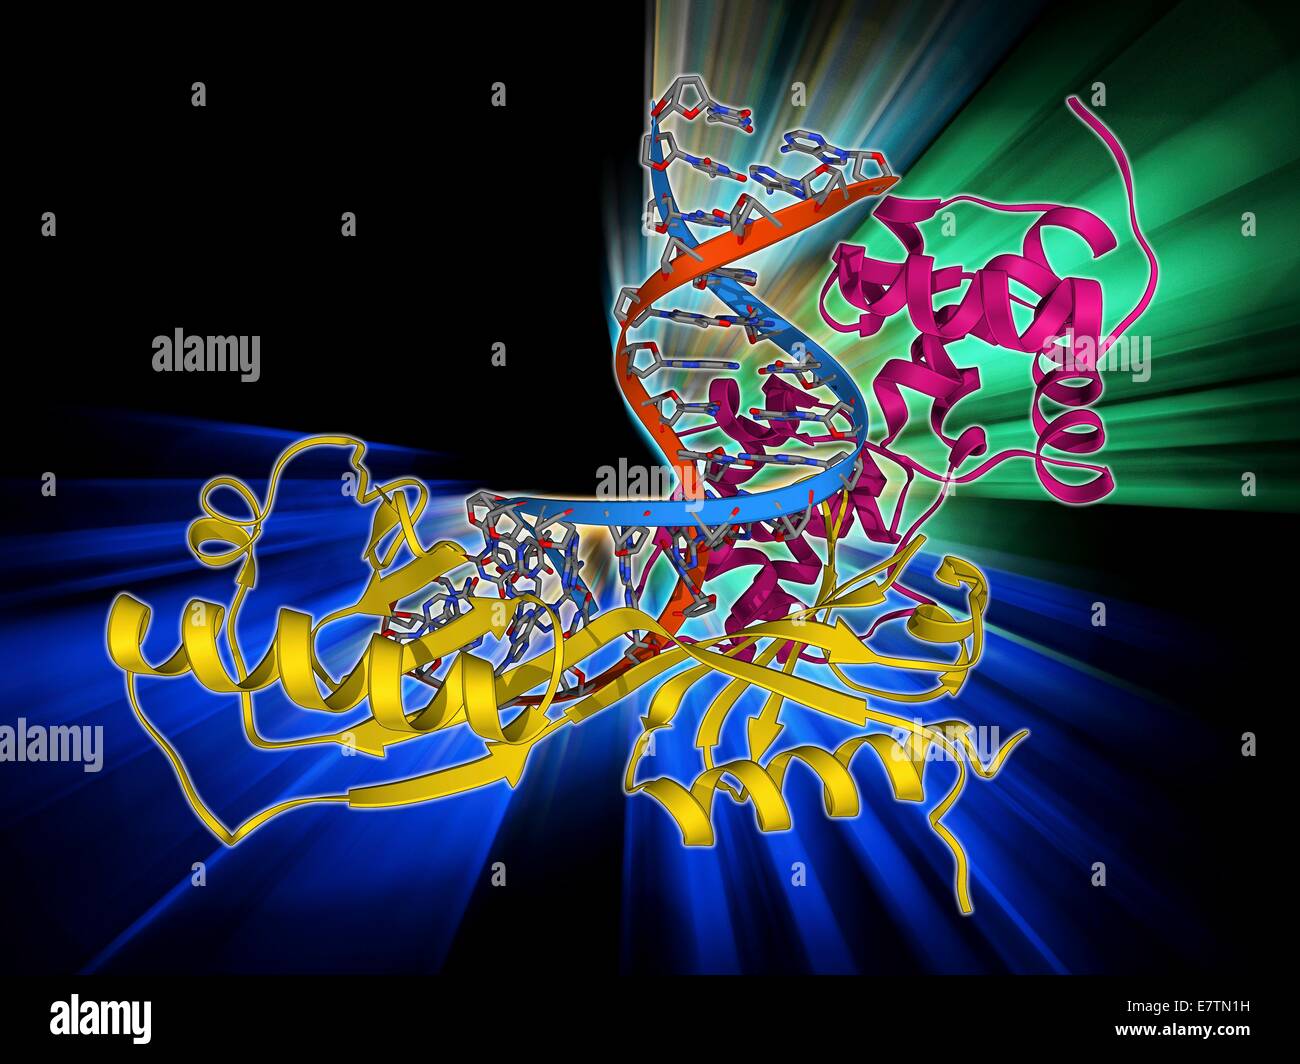 Caja TATA-binding protein complex. Mostrando un modelo molecular de  levaduras caja TATA-Binding Protein (TBP) complejado con una hebra de ADN  (ácido desoxirribonucleico, rojo y azul) y el factor de transcripción IIB.  TBP